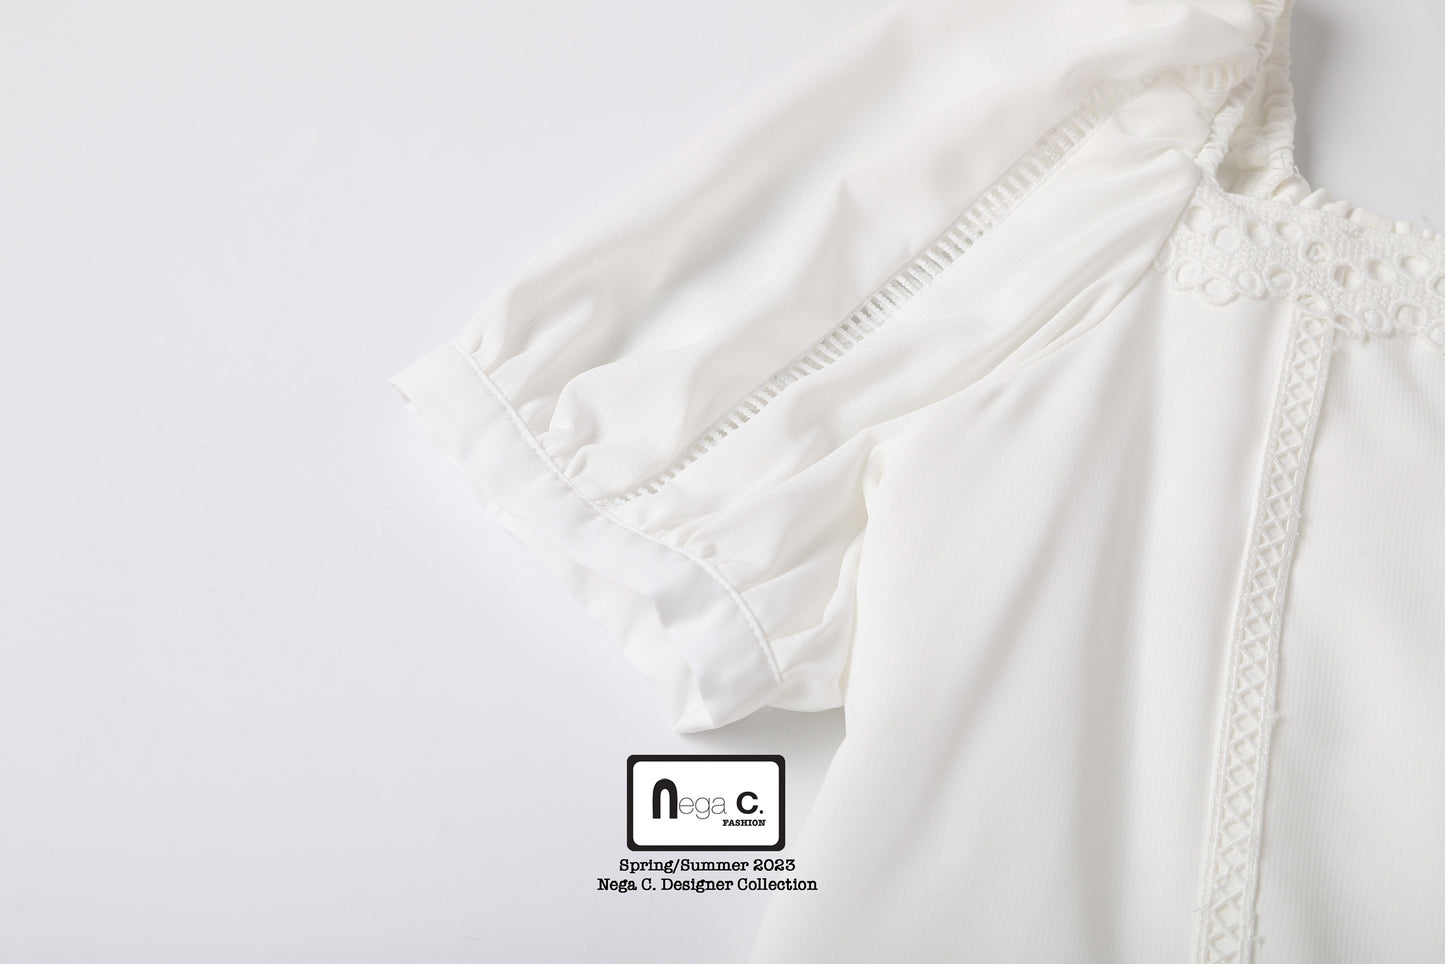 Nega C. 甜美感方領蕾絲泡泡袖上衣| 白色| 有裡襯